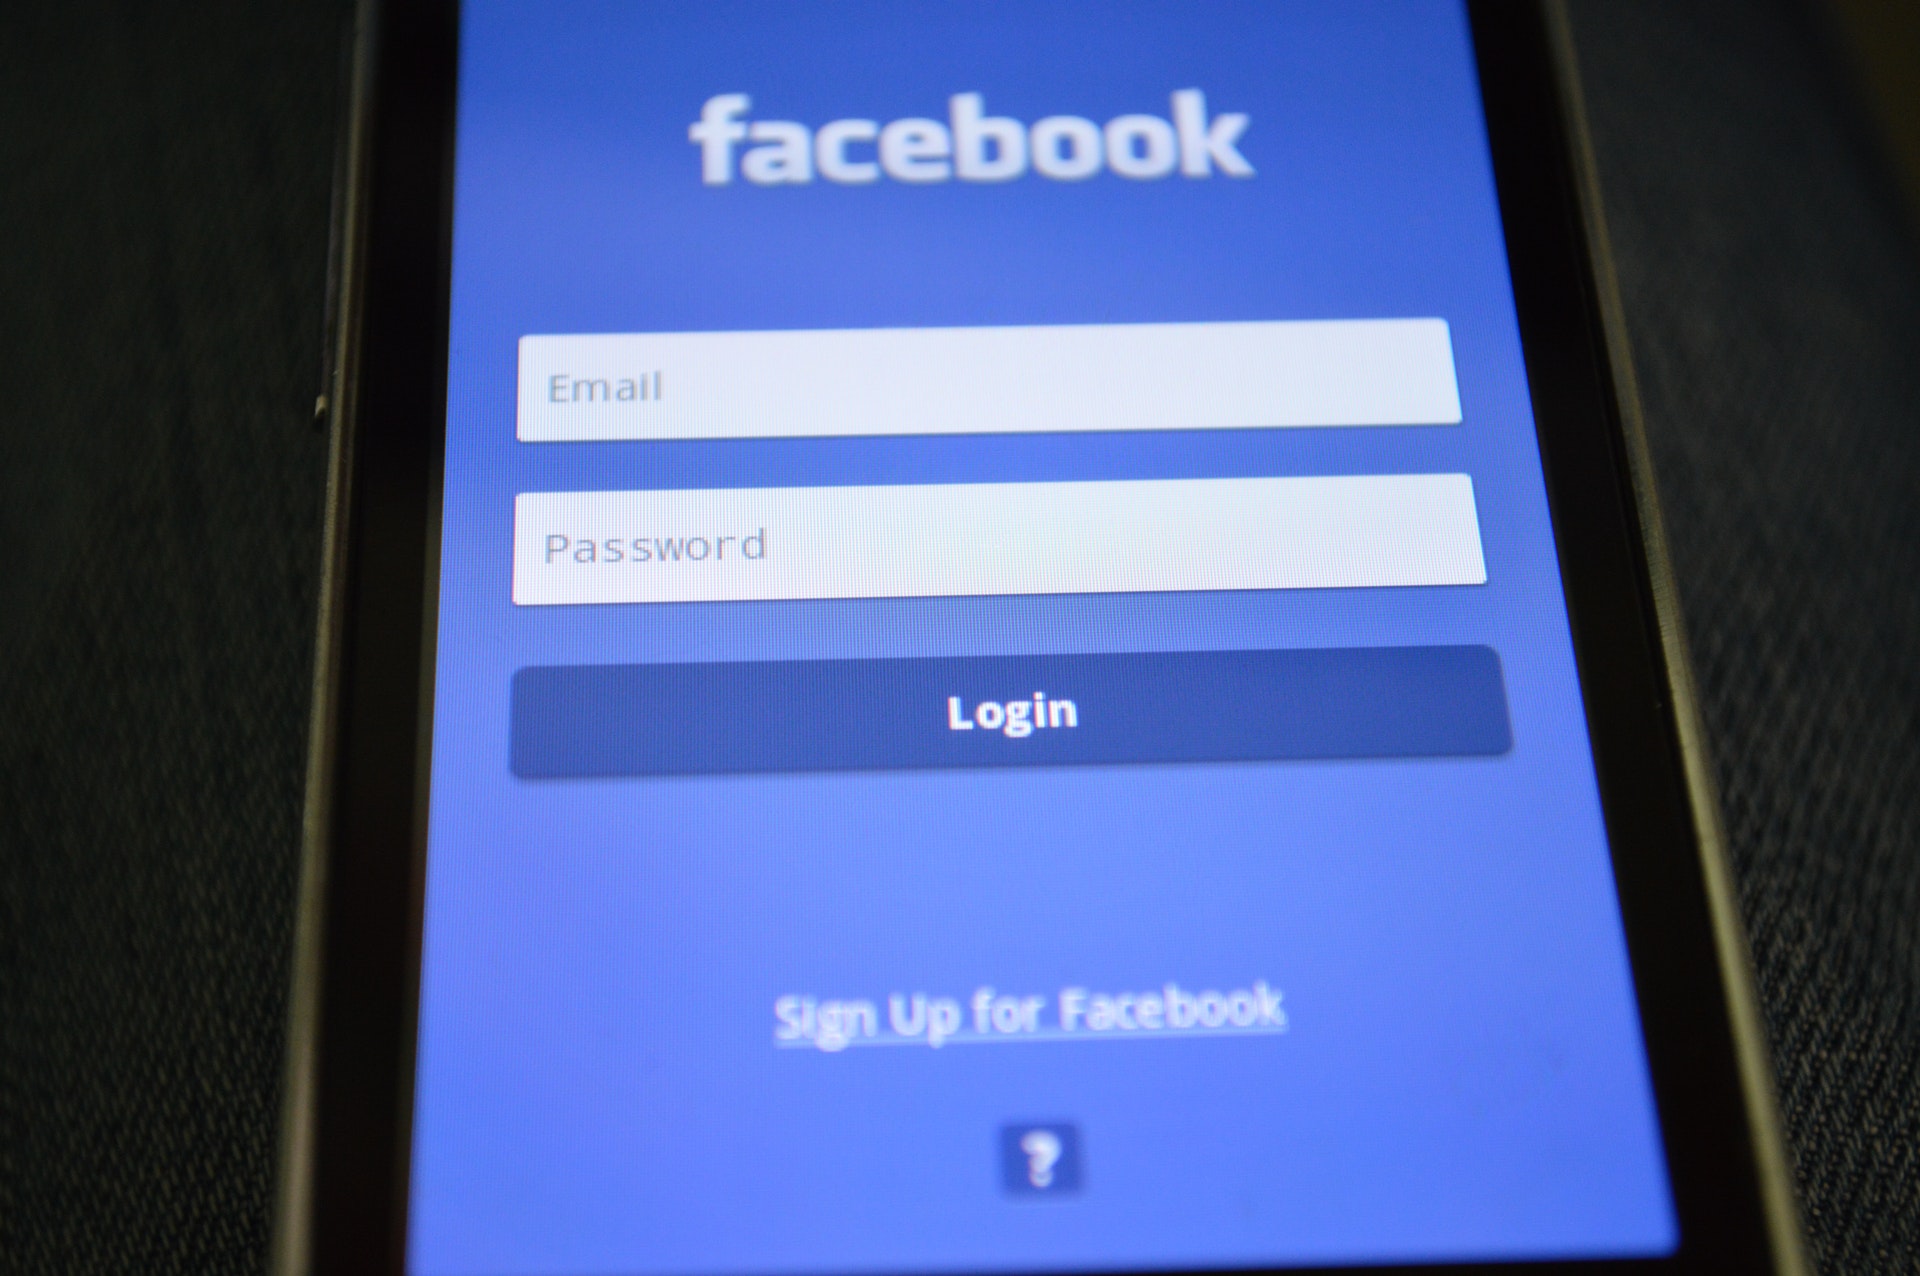 E’ reato accedere al profilo facebook del coniuge anche se si conoscono le credenziali